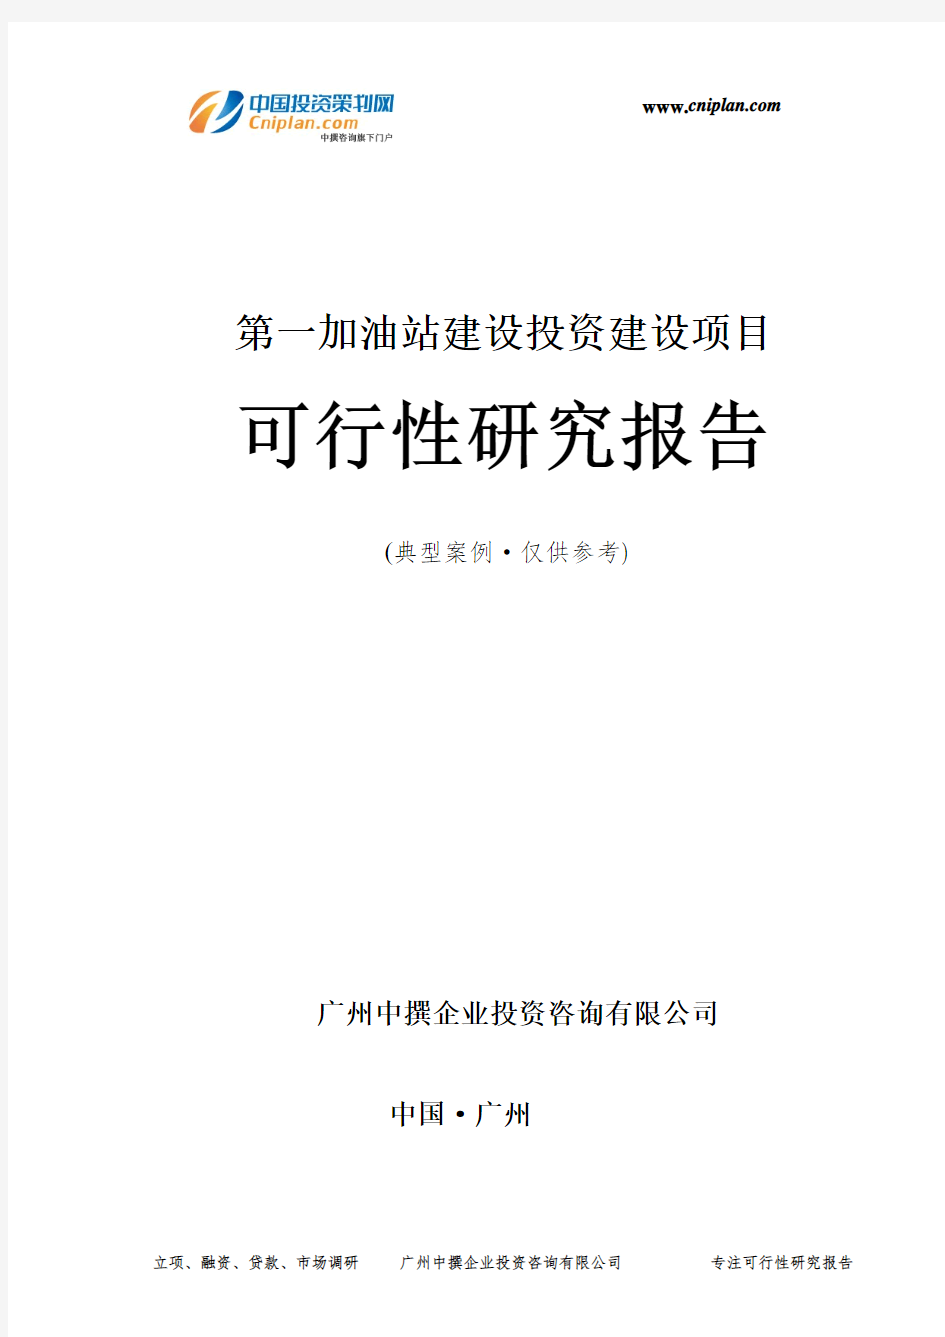 第一加油站建设投资建设项目可行性研究报告-广州中撰咨询